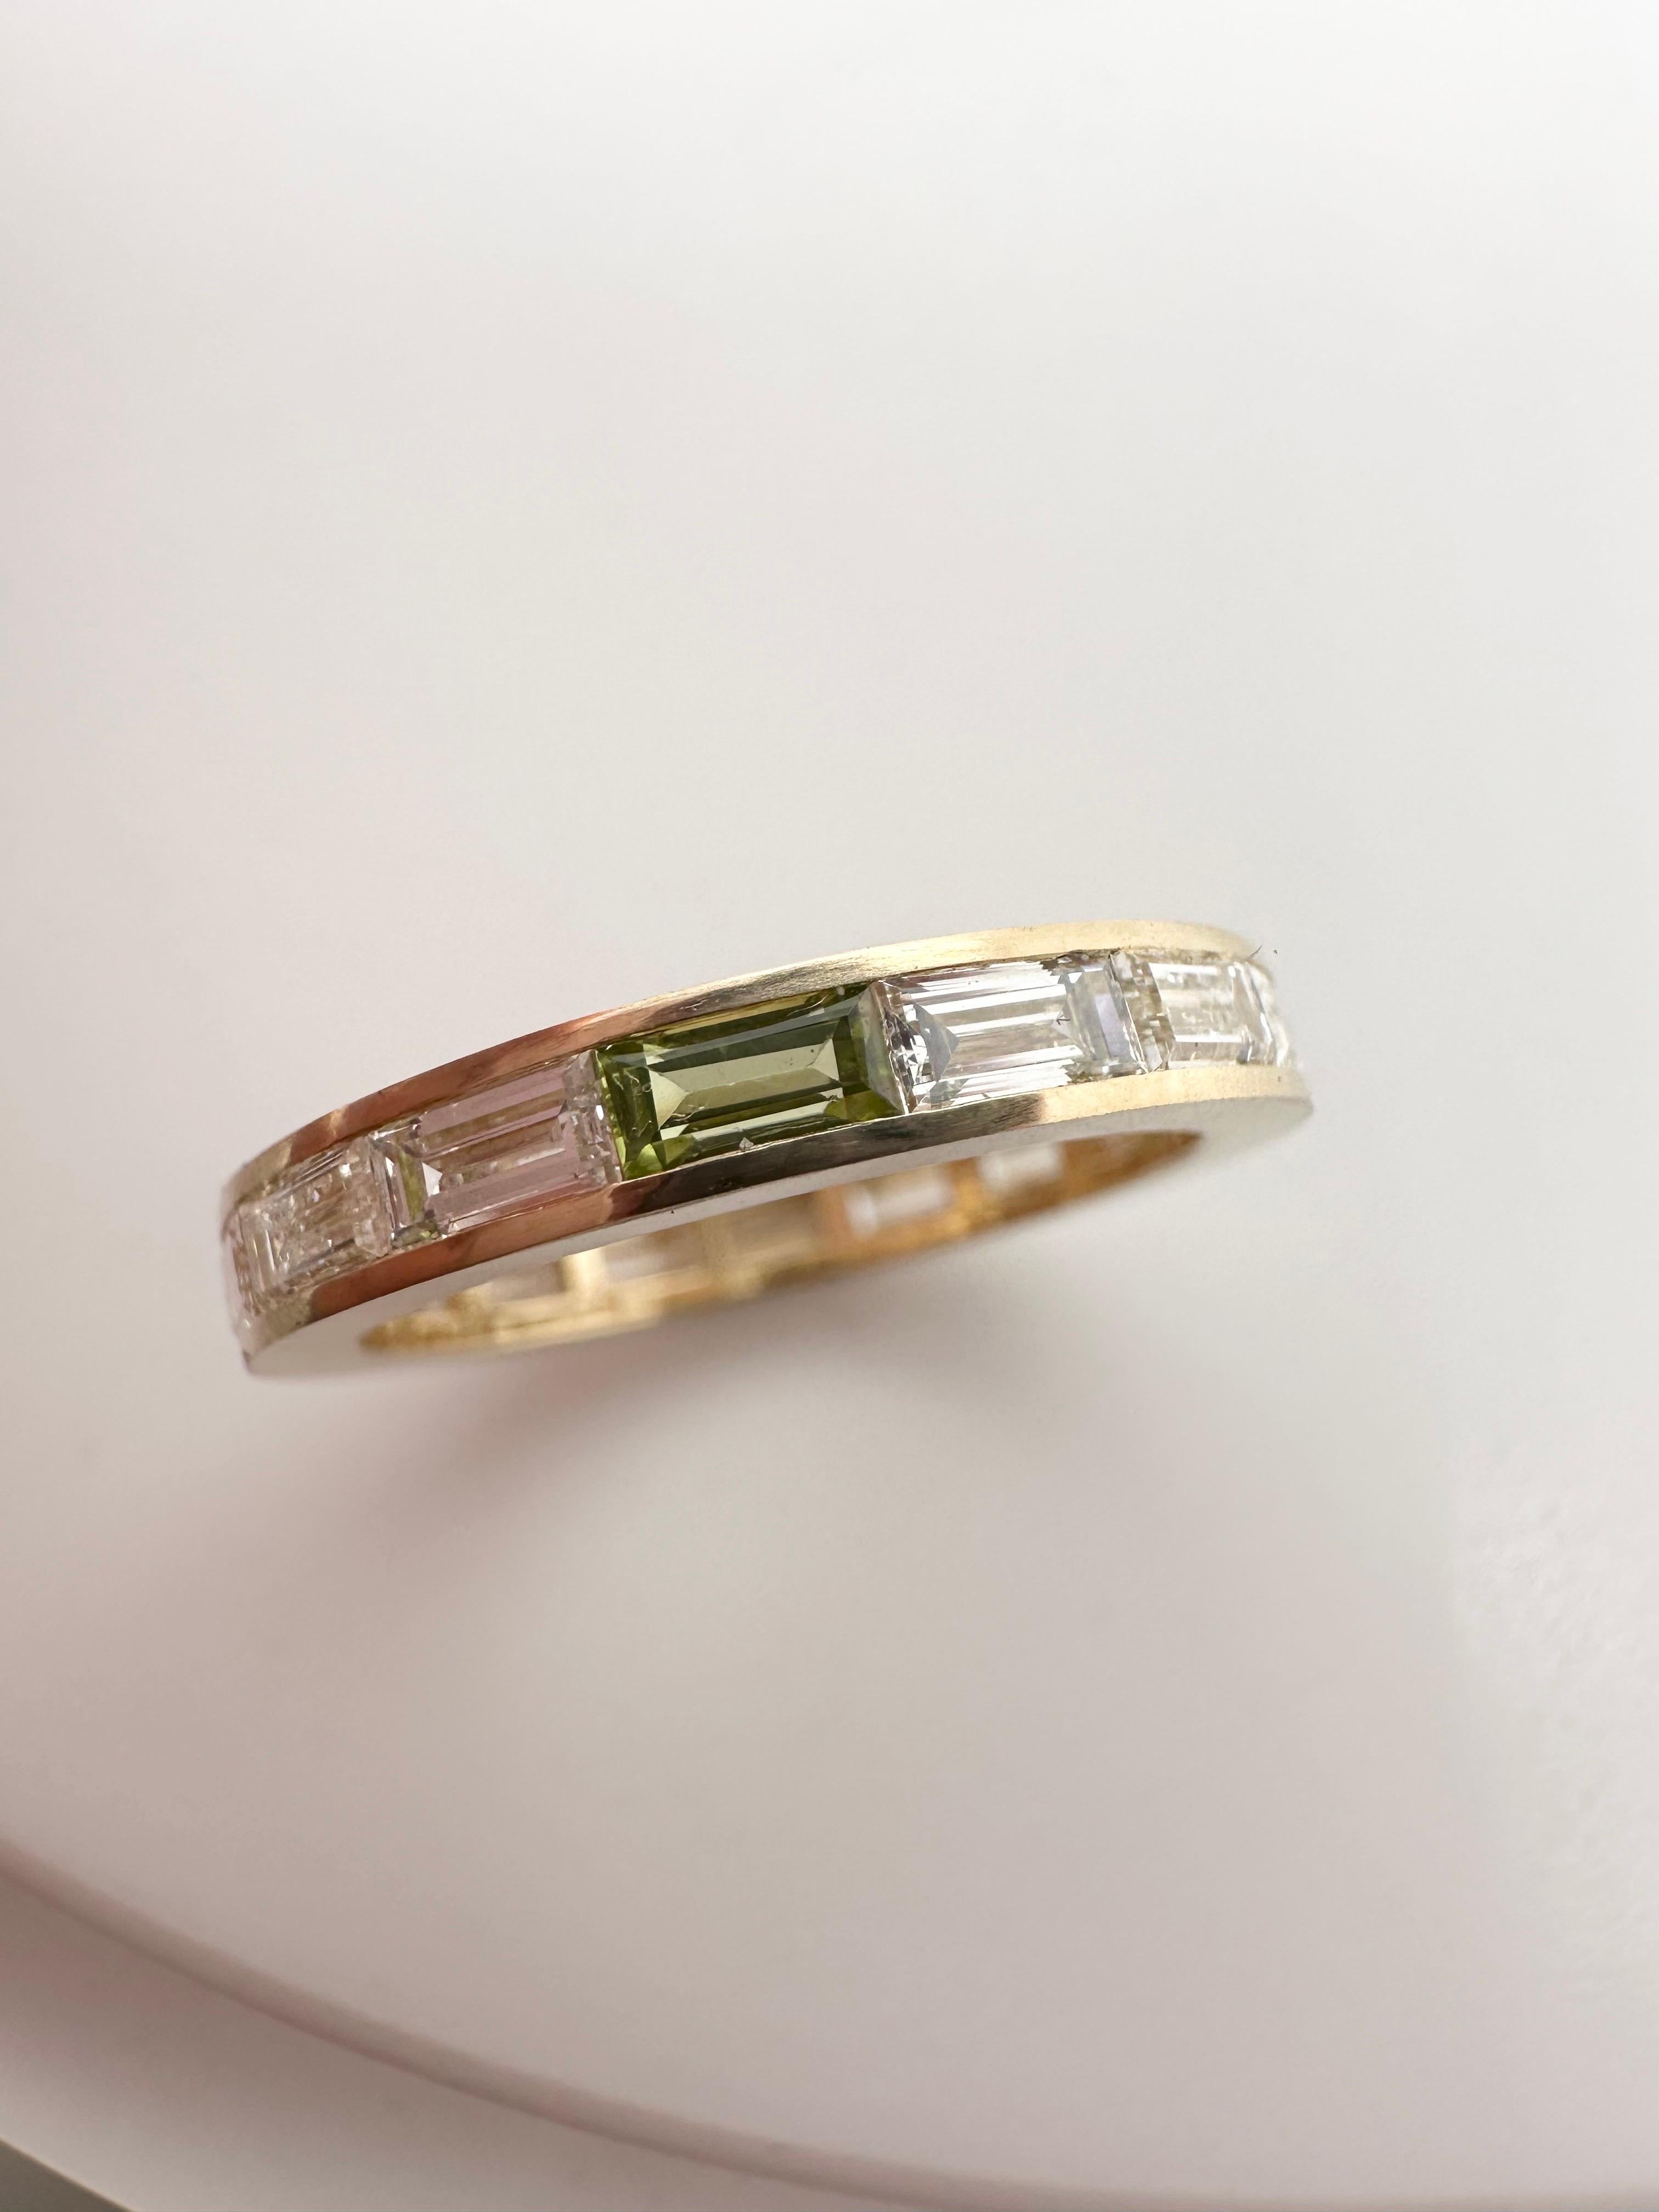 Diese Ringe sind jetzt in Mode und man sieht sie überall! 
Wahnsinn! Rundherum mit Diamant-Baguetten besetzt, mit Ausnahme eines grünen Peridots, der den Unterschied ausmacht und dem Ring einen verspielten Ton verleiht. Der Ring ist aus 18KT